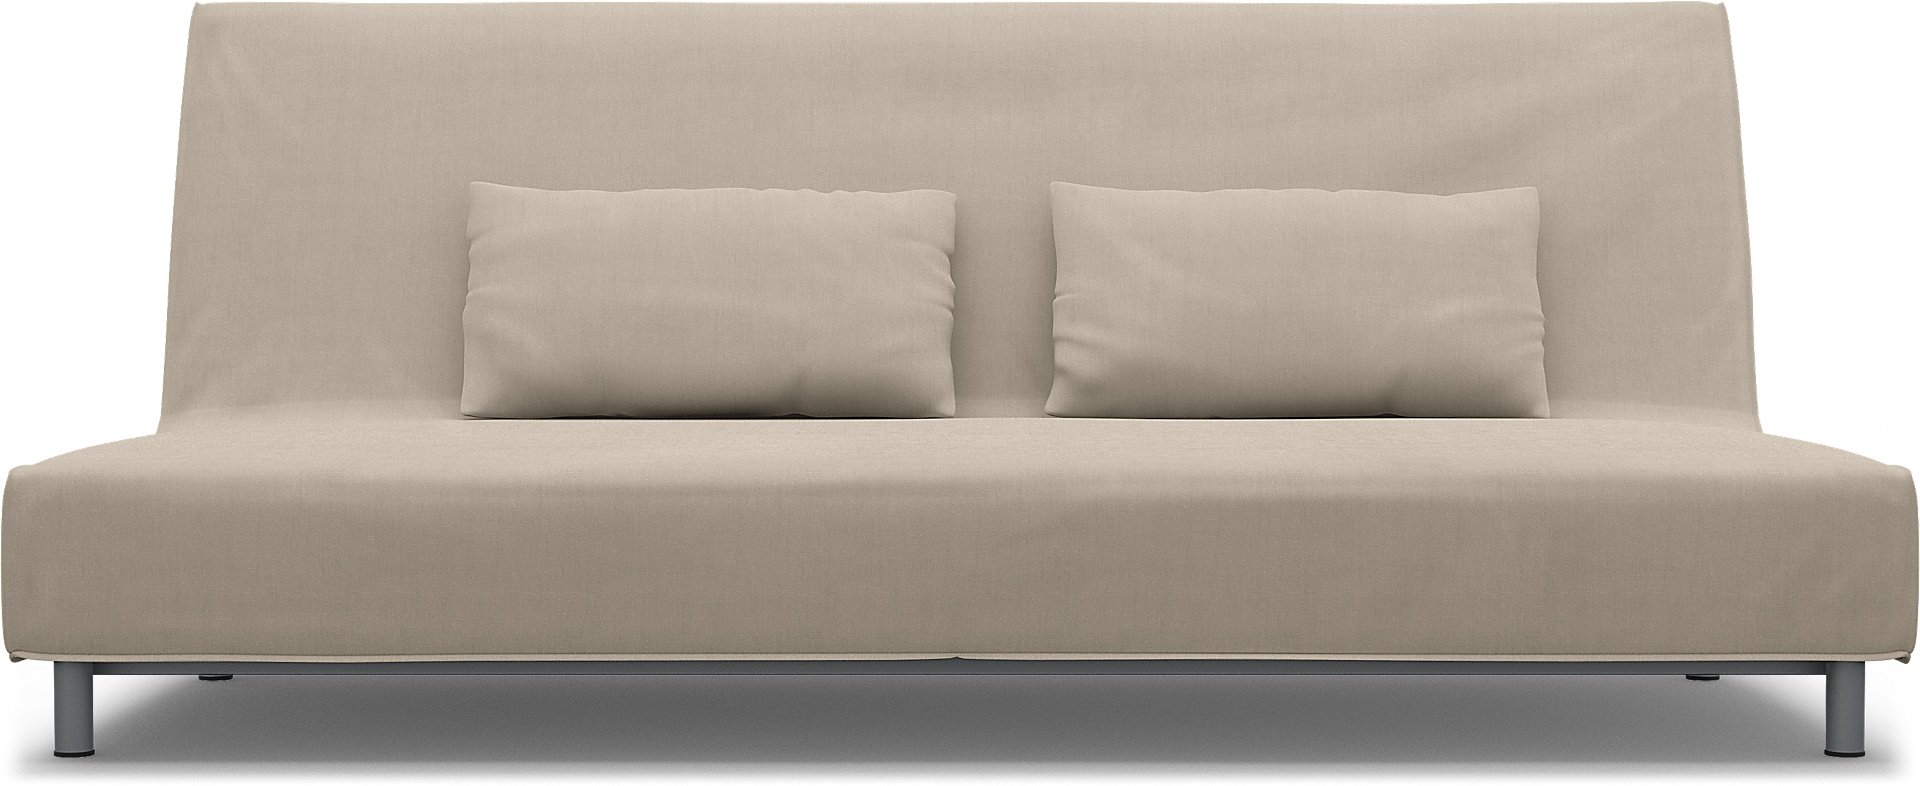 IKEA - Beddinge Sofa Bed Cover, Parchment, Linen - Bemz